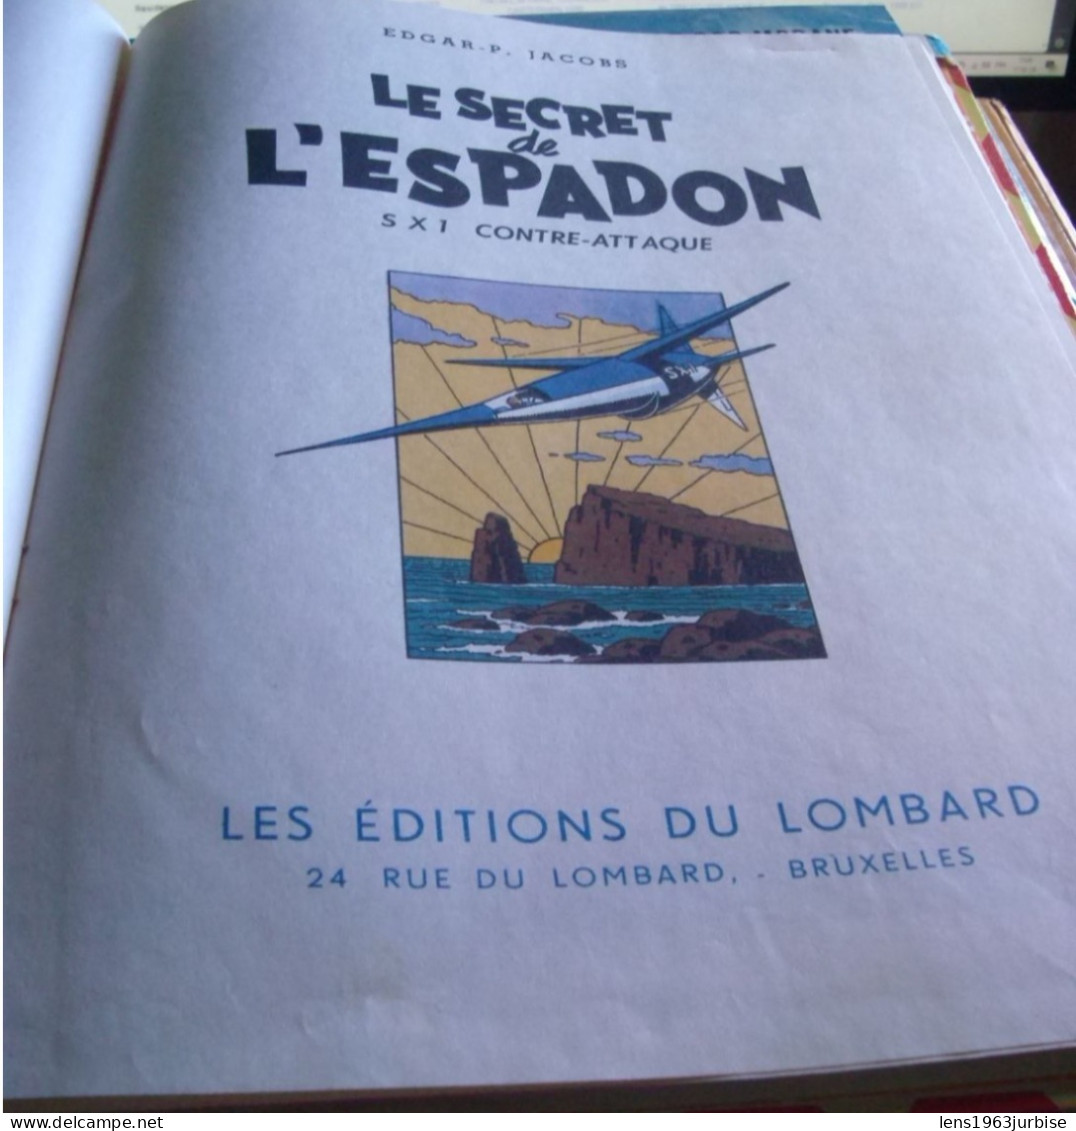 Le Secret De L'espadon  ; SX 1 Contre - Attaque , Edgar P Jacob , Lombard  ( 1957 ) BE  Trace D'usage - Blake Et Mortimer